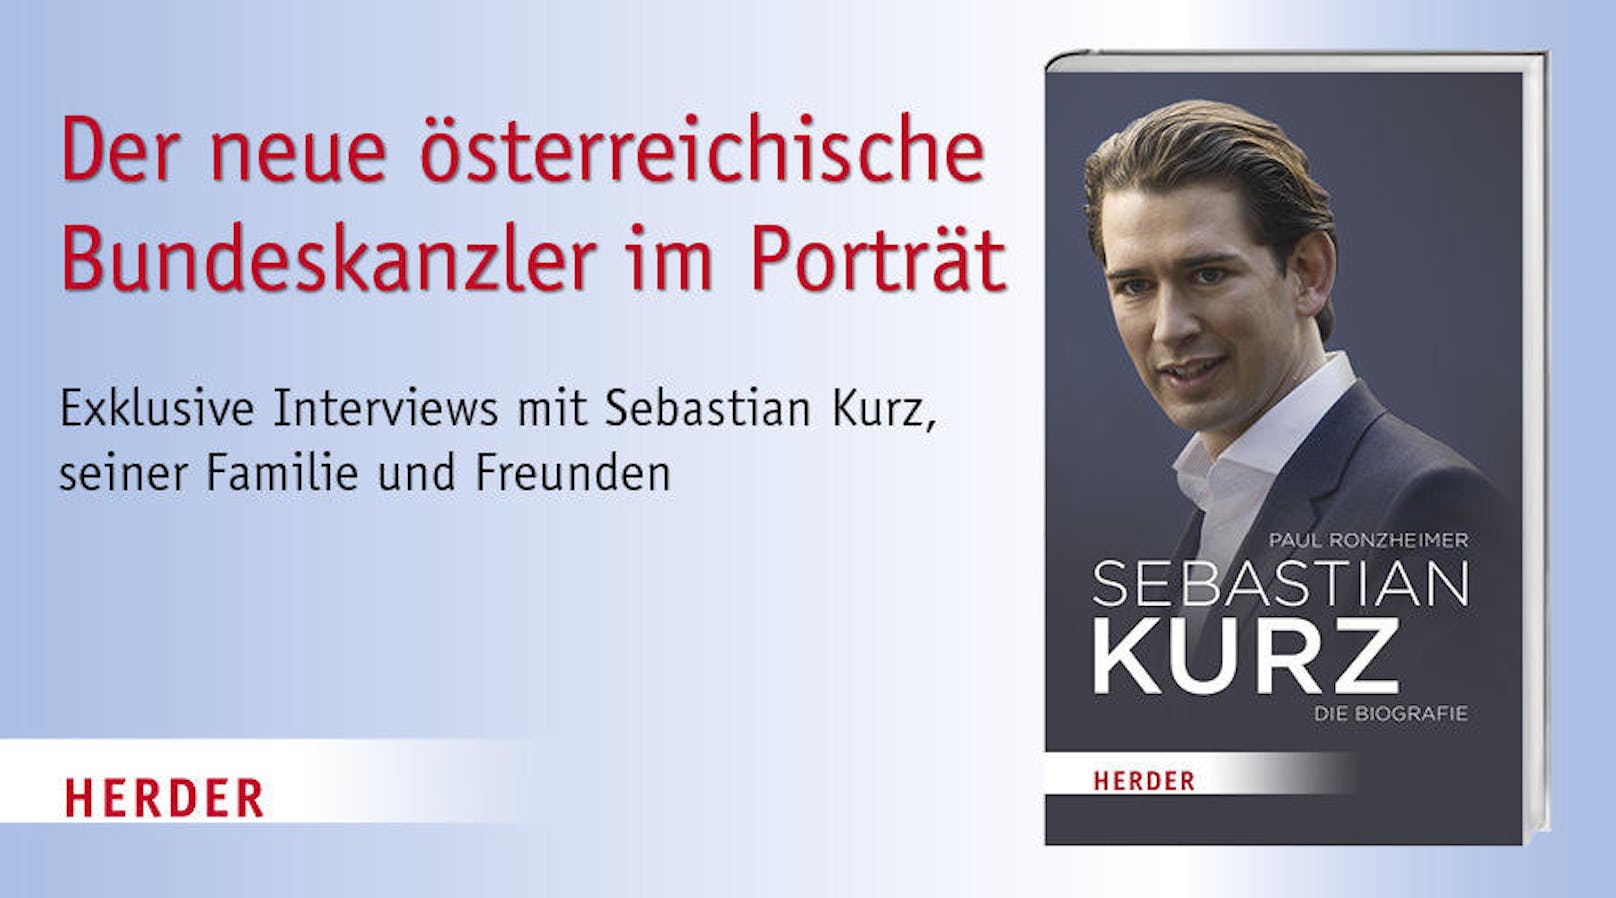 "Sebastian Kurz - Die Biografie" von Paul Ronzheimer porträtiert den neuen österreichischen Bundeskanzler. <a href="https://www.herder.de/leben/?utm_source=heute.at&utm_medium=affiliate&utm_content=cpc&utm_campaign=39977">Zum Buch</a>